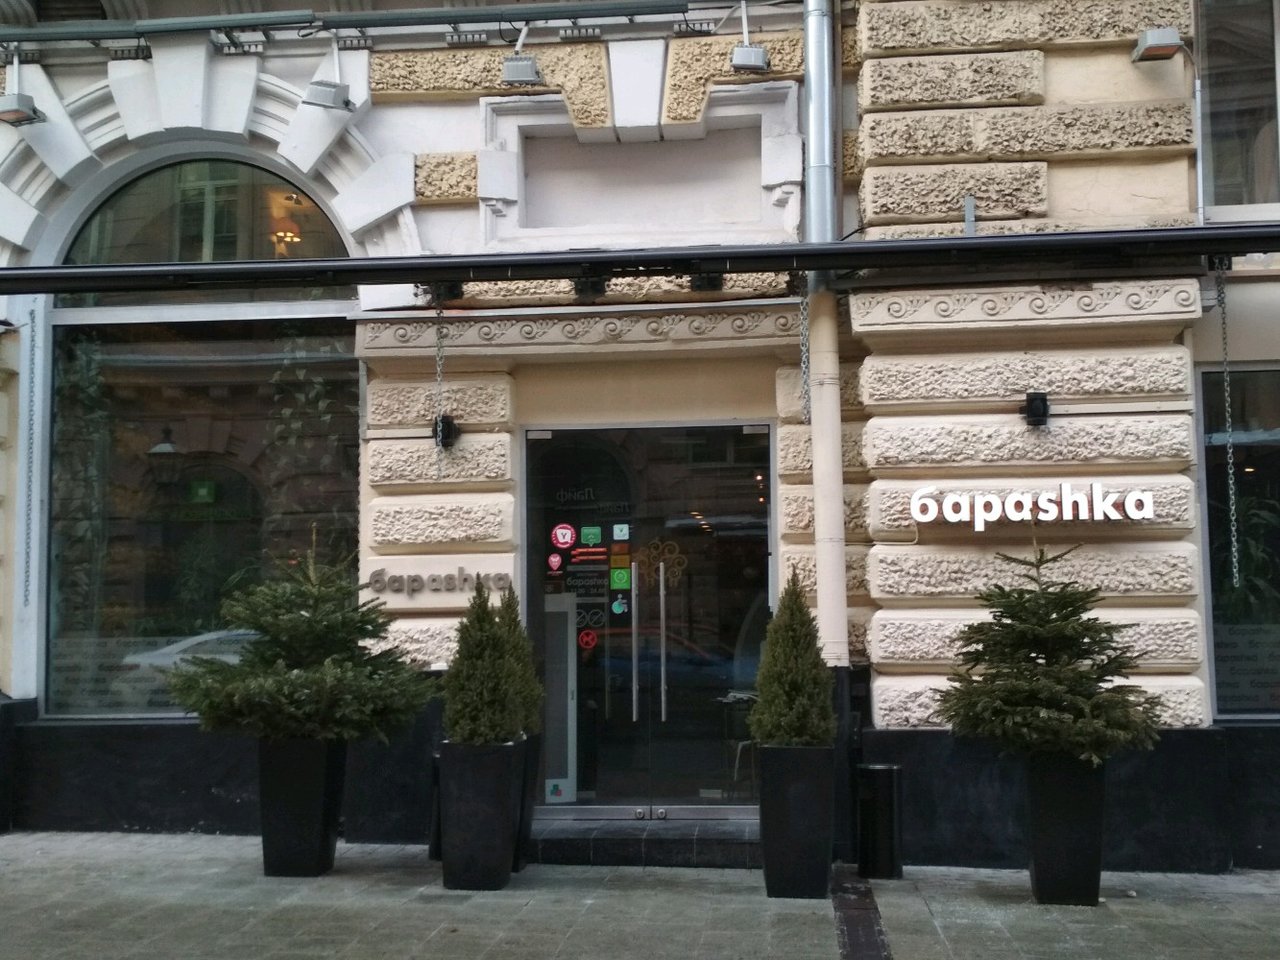 Restaurantes en Moscú ricos y de buen precio Barashka es de la comida tradicional georgiana georgiana 